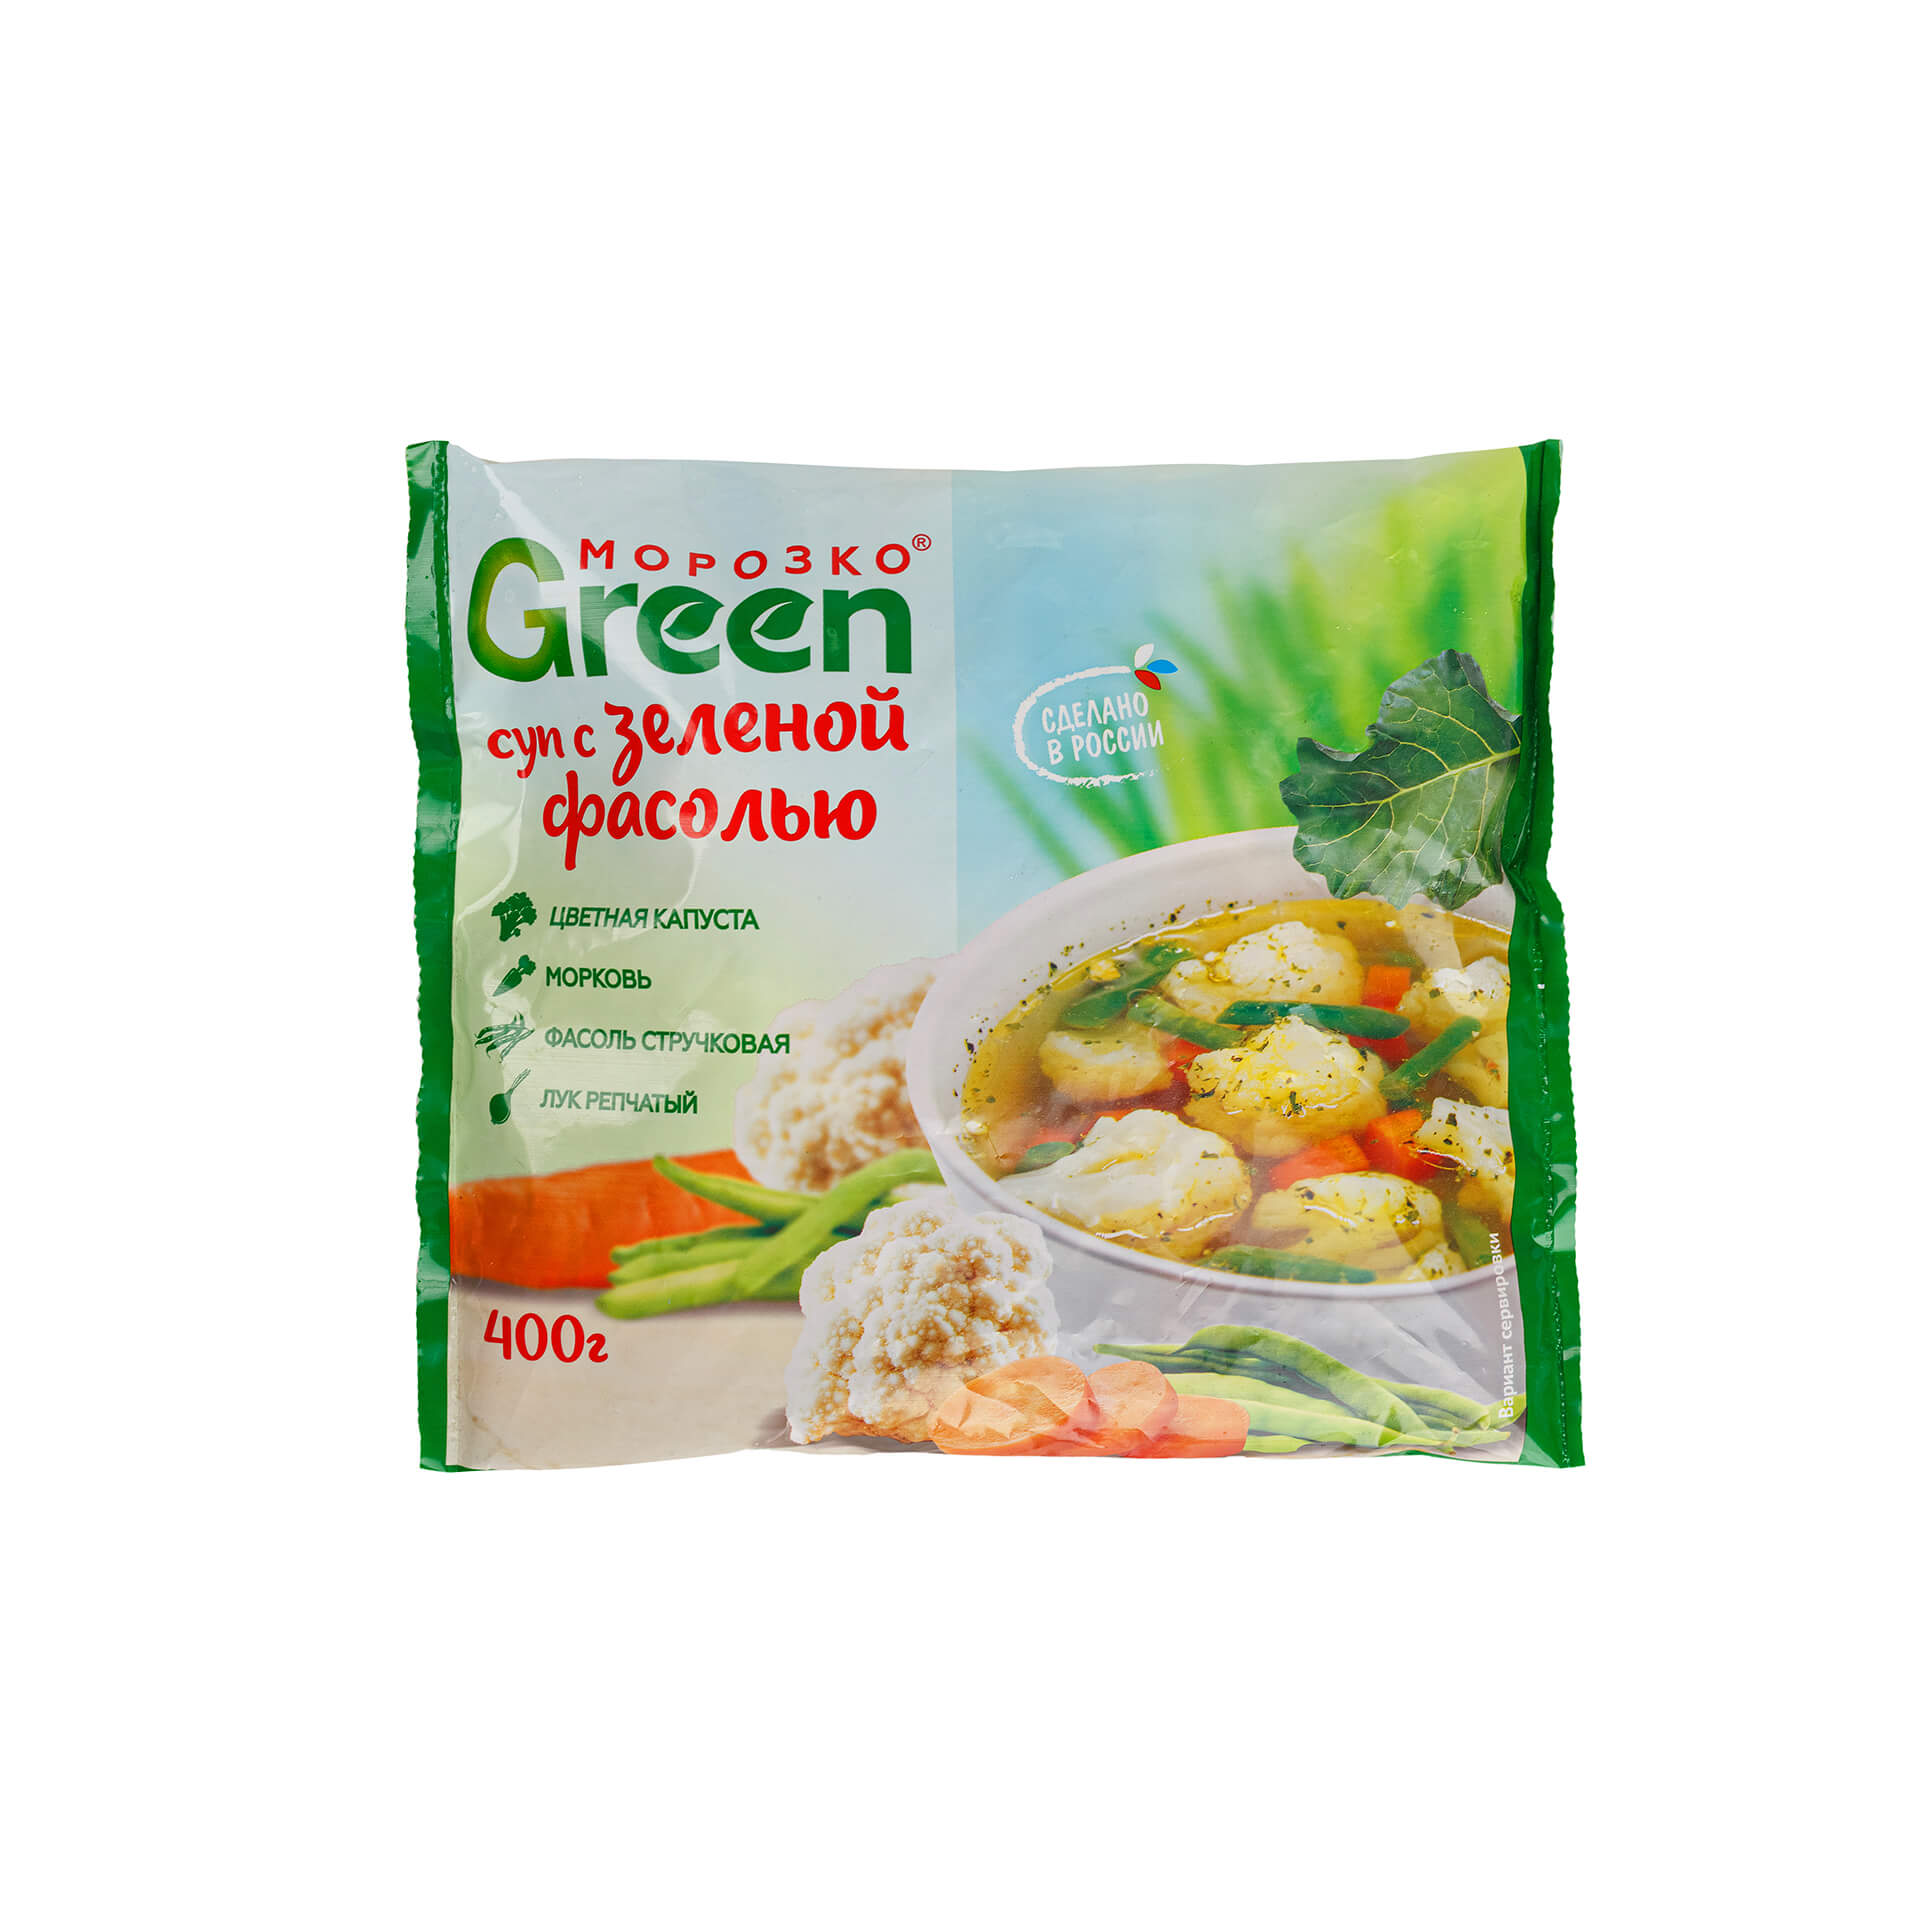 Быстрозамороженный суп с зеленой фасолью Морозко Green 400 г 8249LED, общий вид, купить оптом с доставкой по москве и московской области, недорого, низкая цена